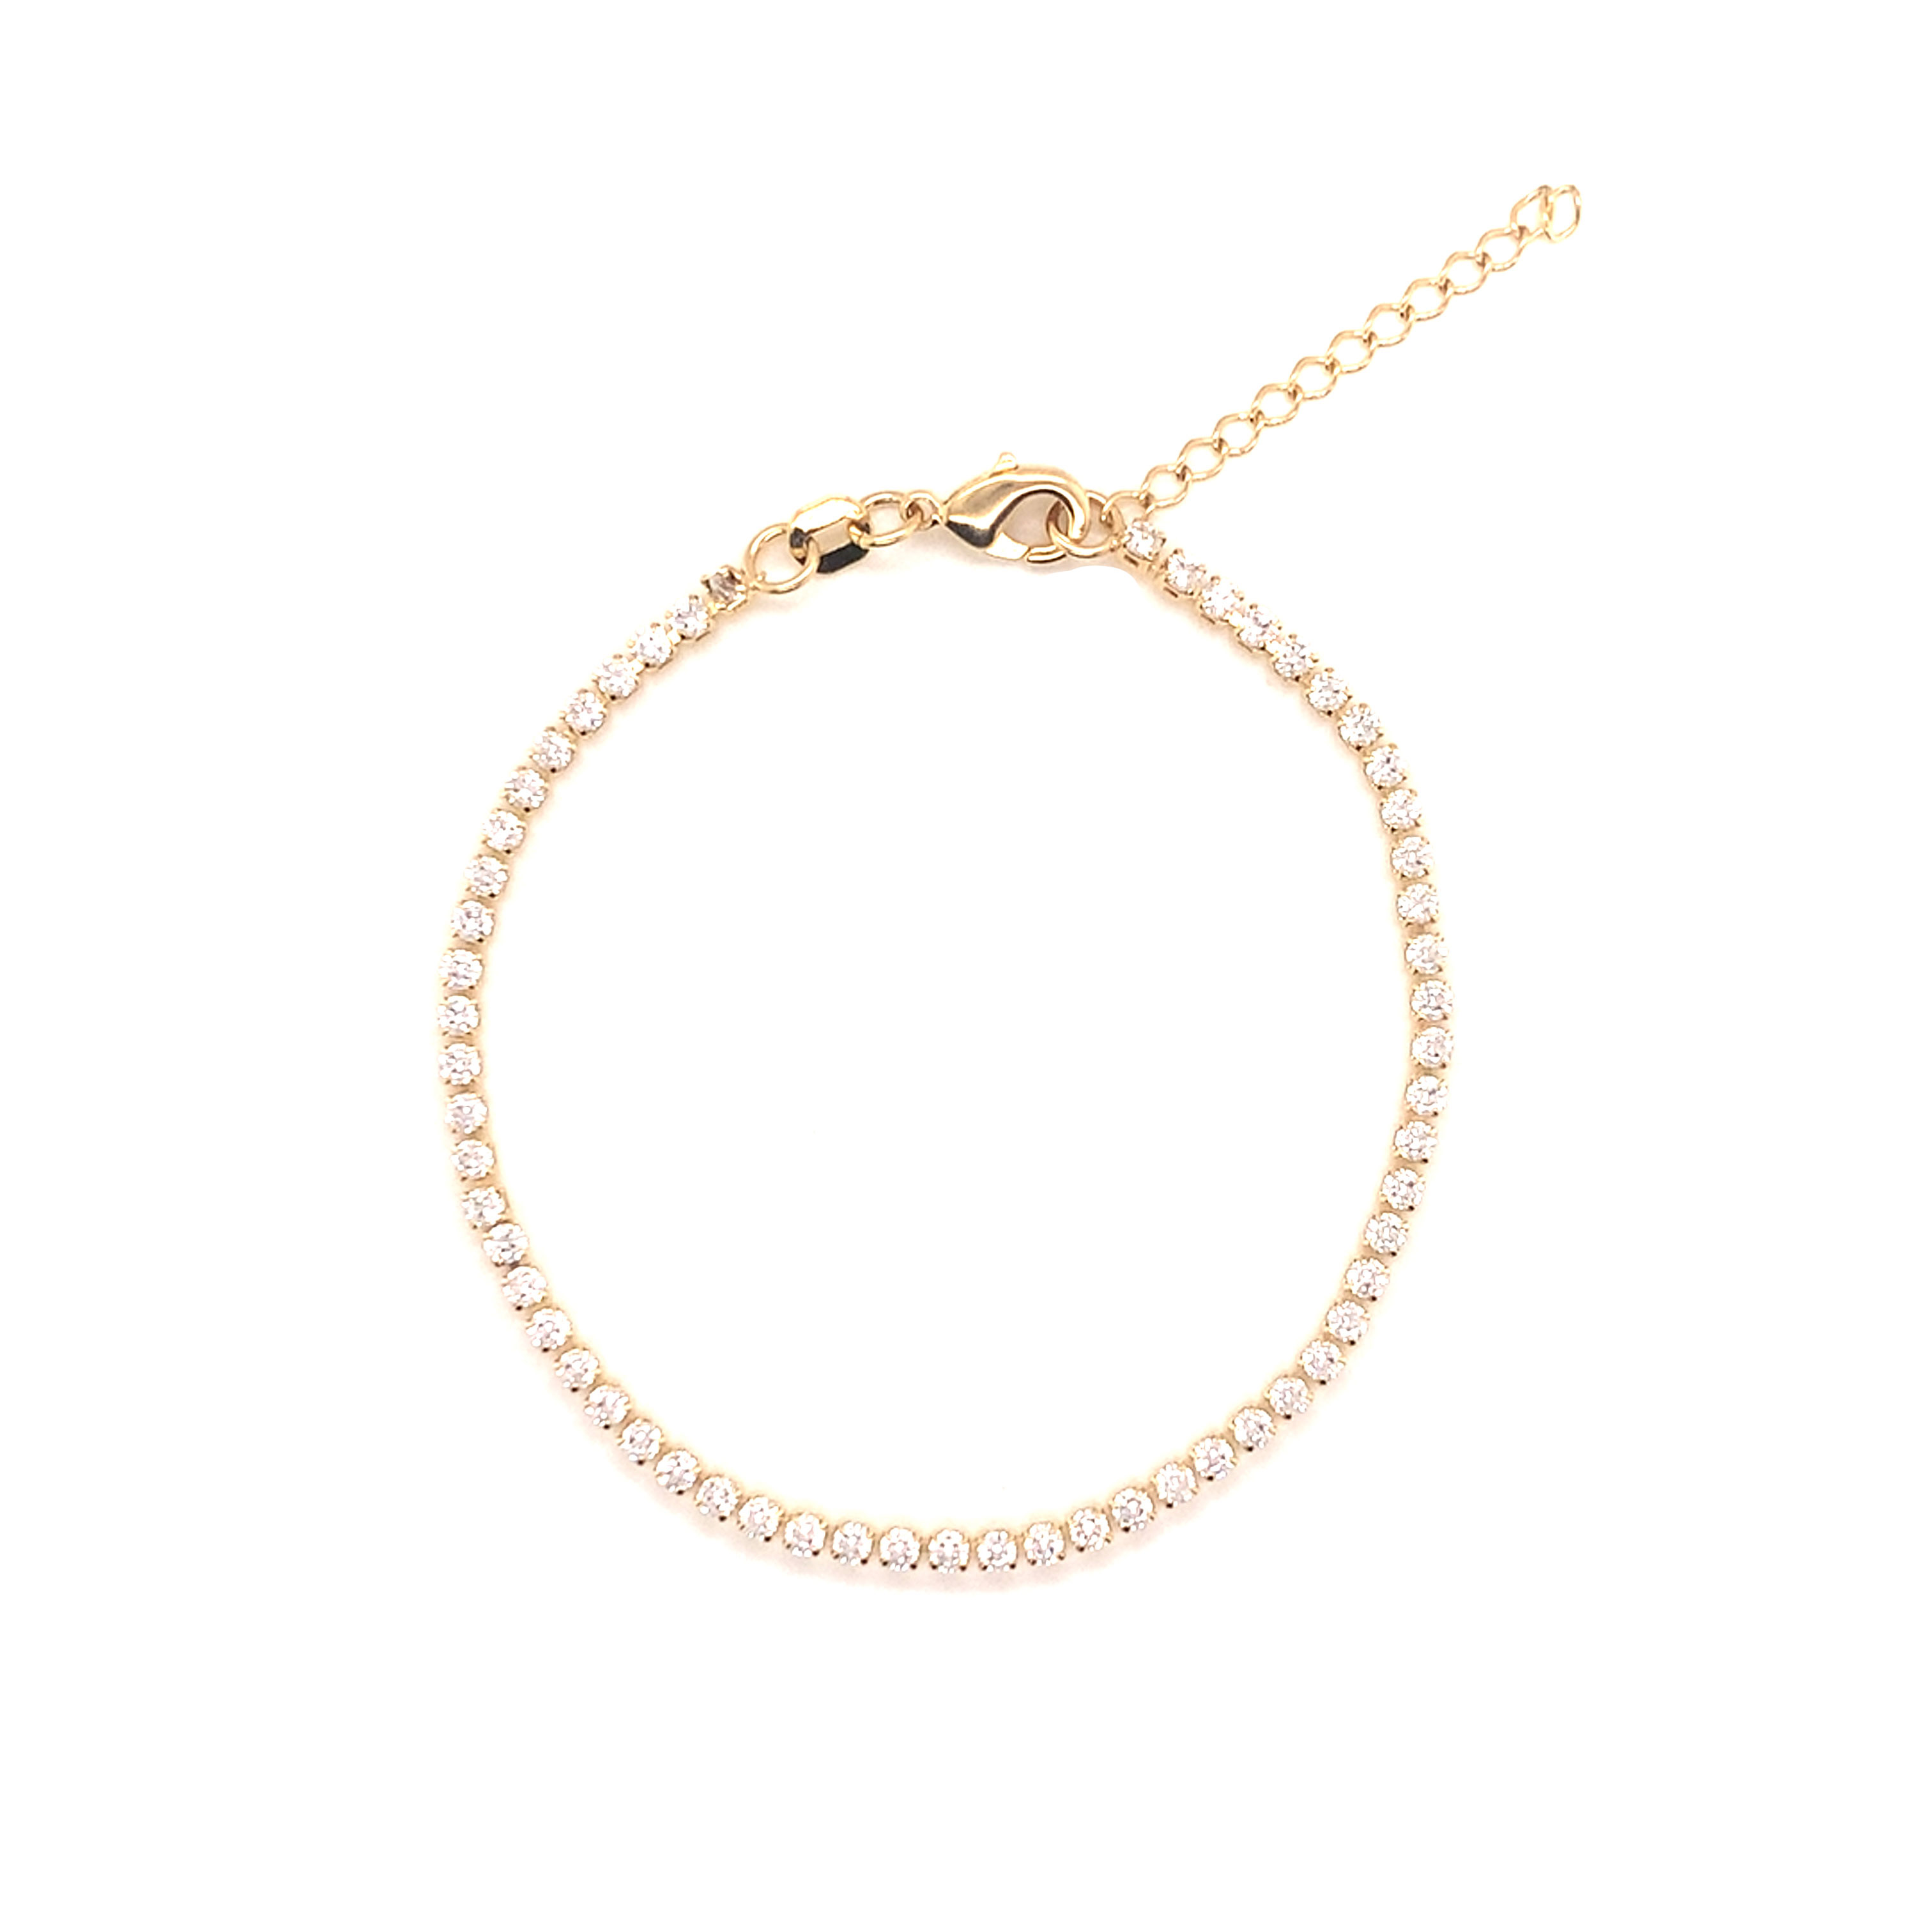 Tennis Bracelet - 6.25" + 1" Extension - Gold Filled